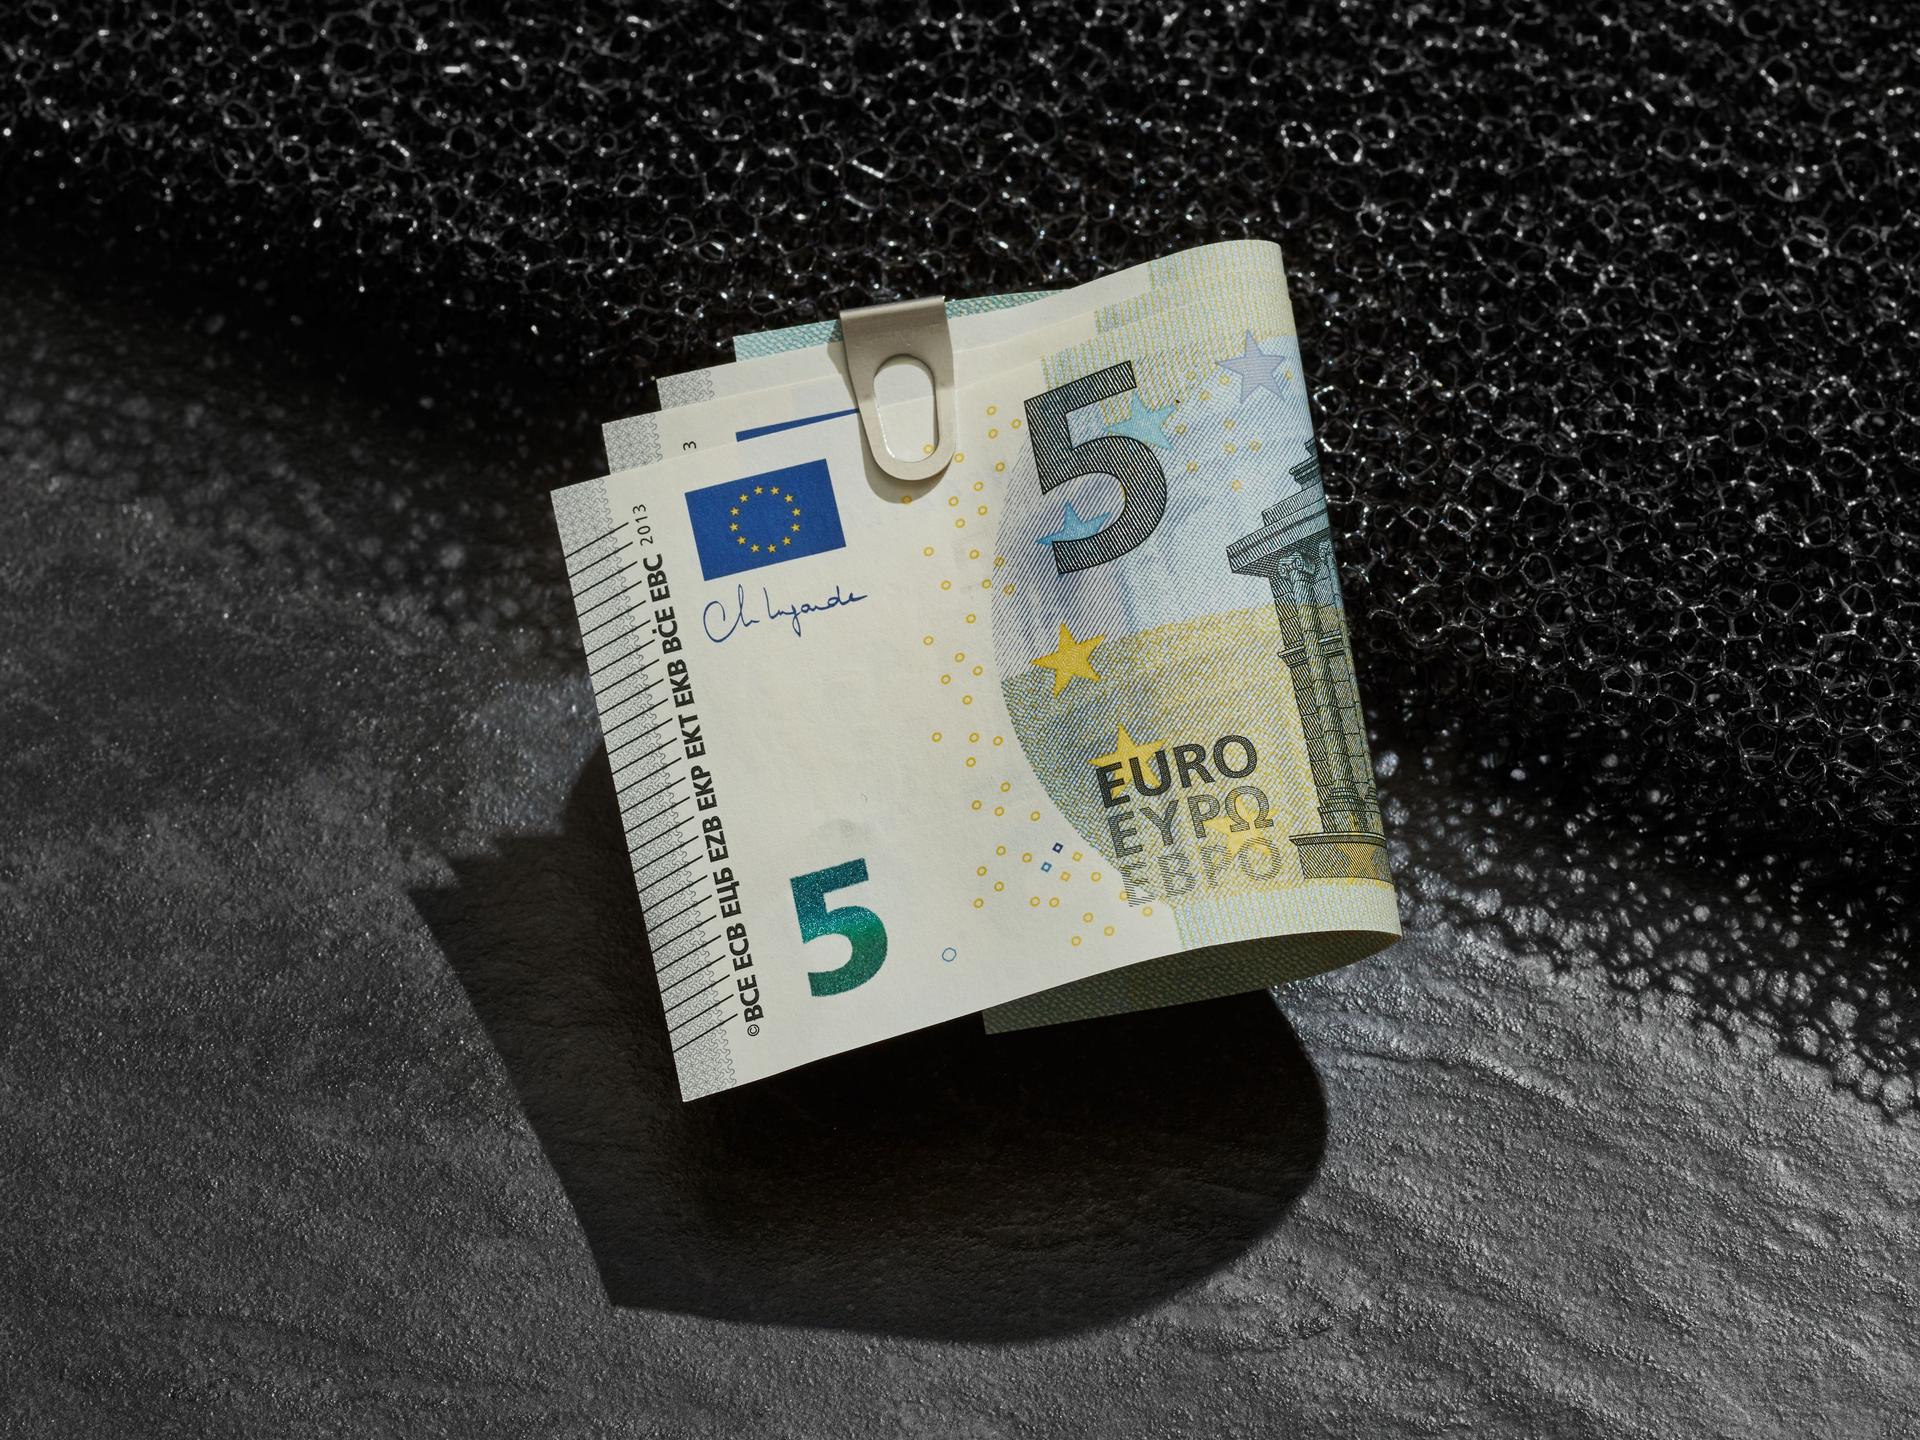 Ein Buendel 5-Euroscheine mit einer klammer befestigt liegt auf einer Kante.